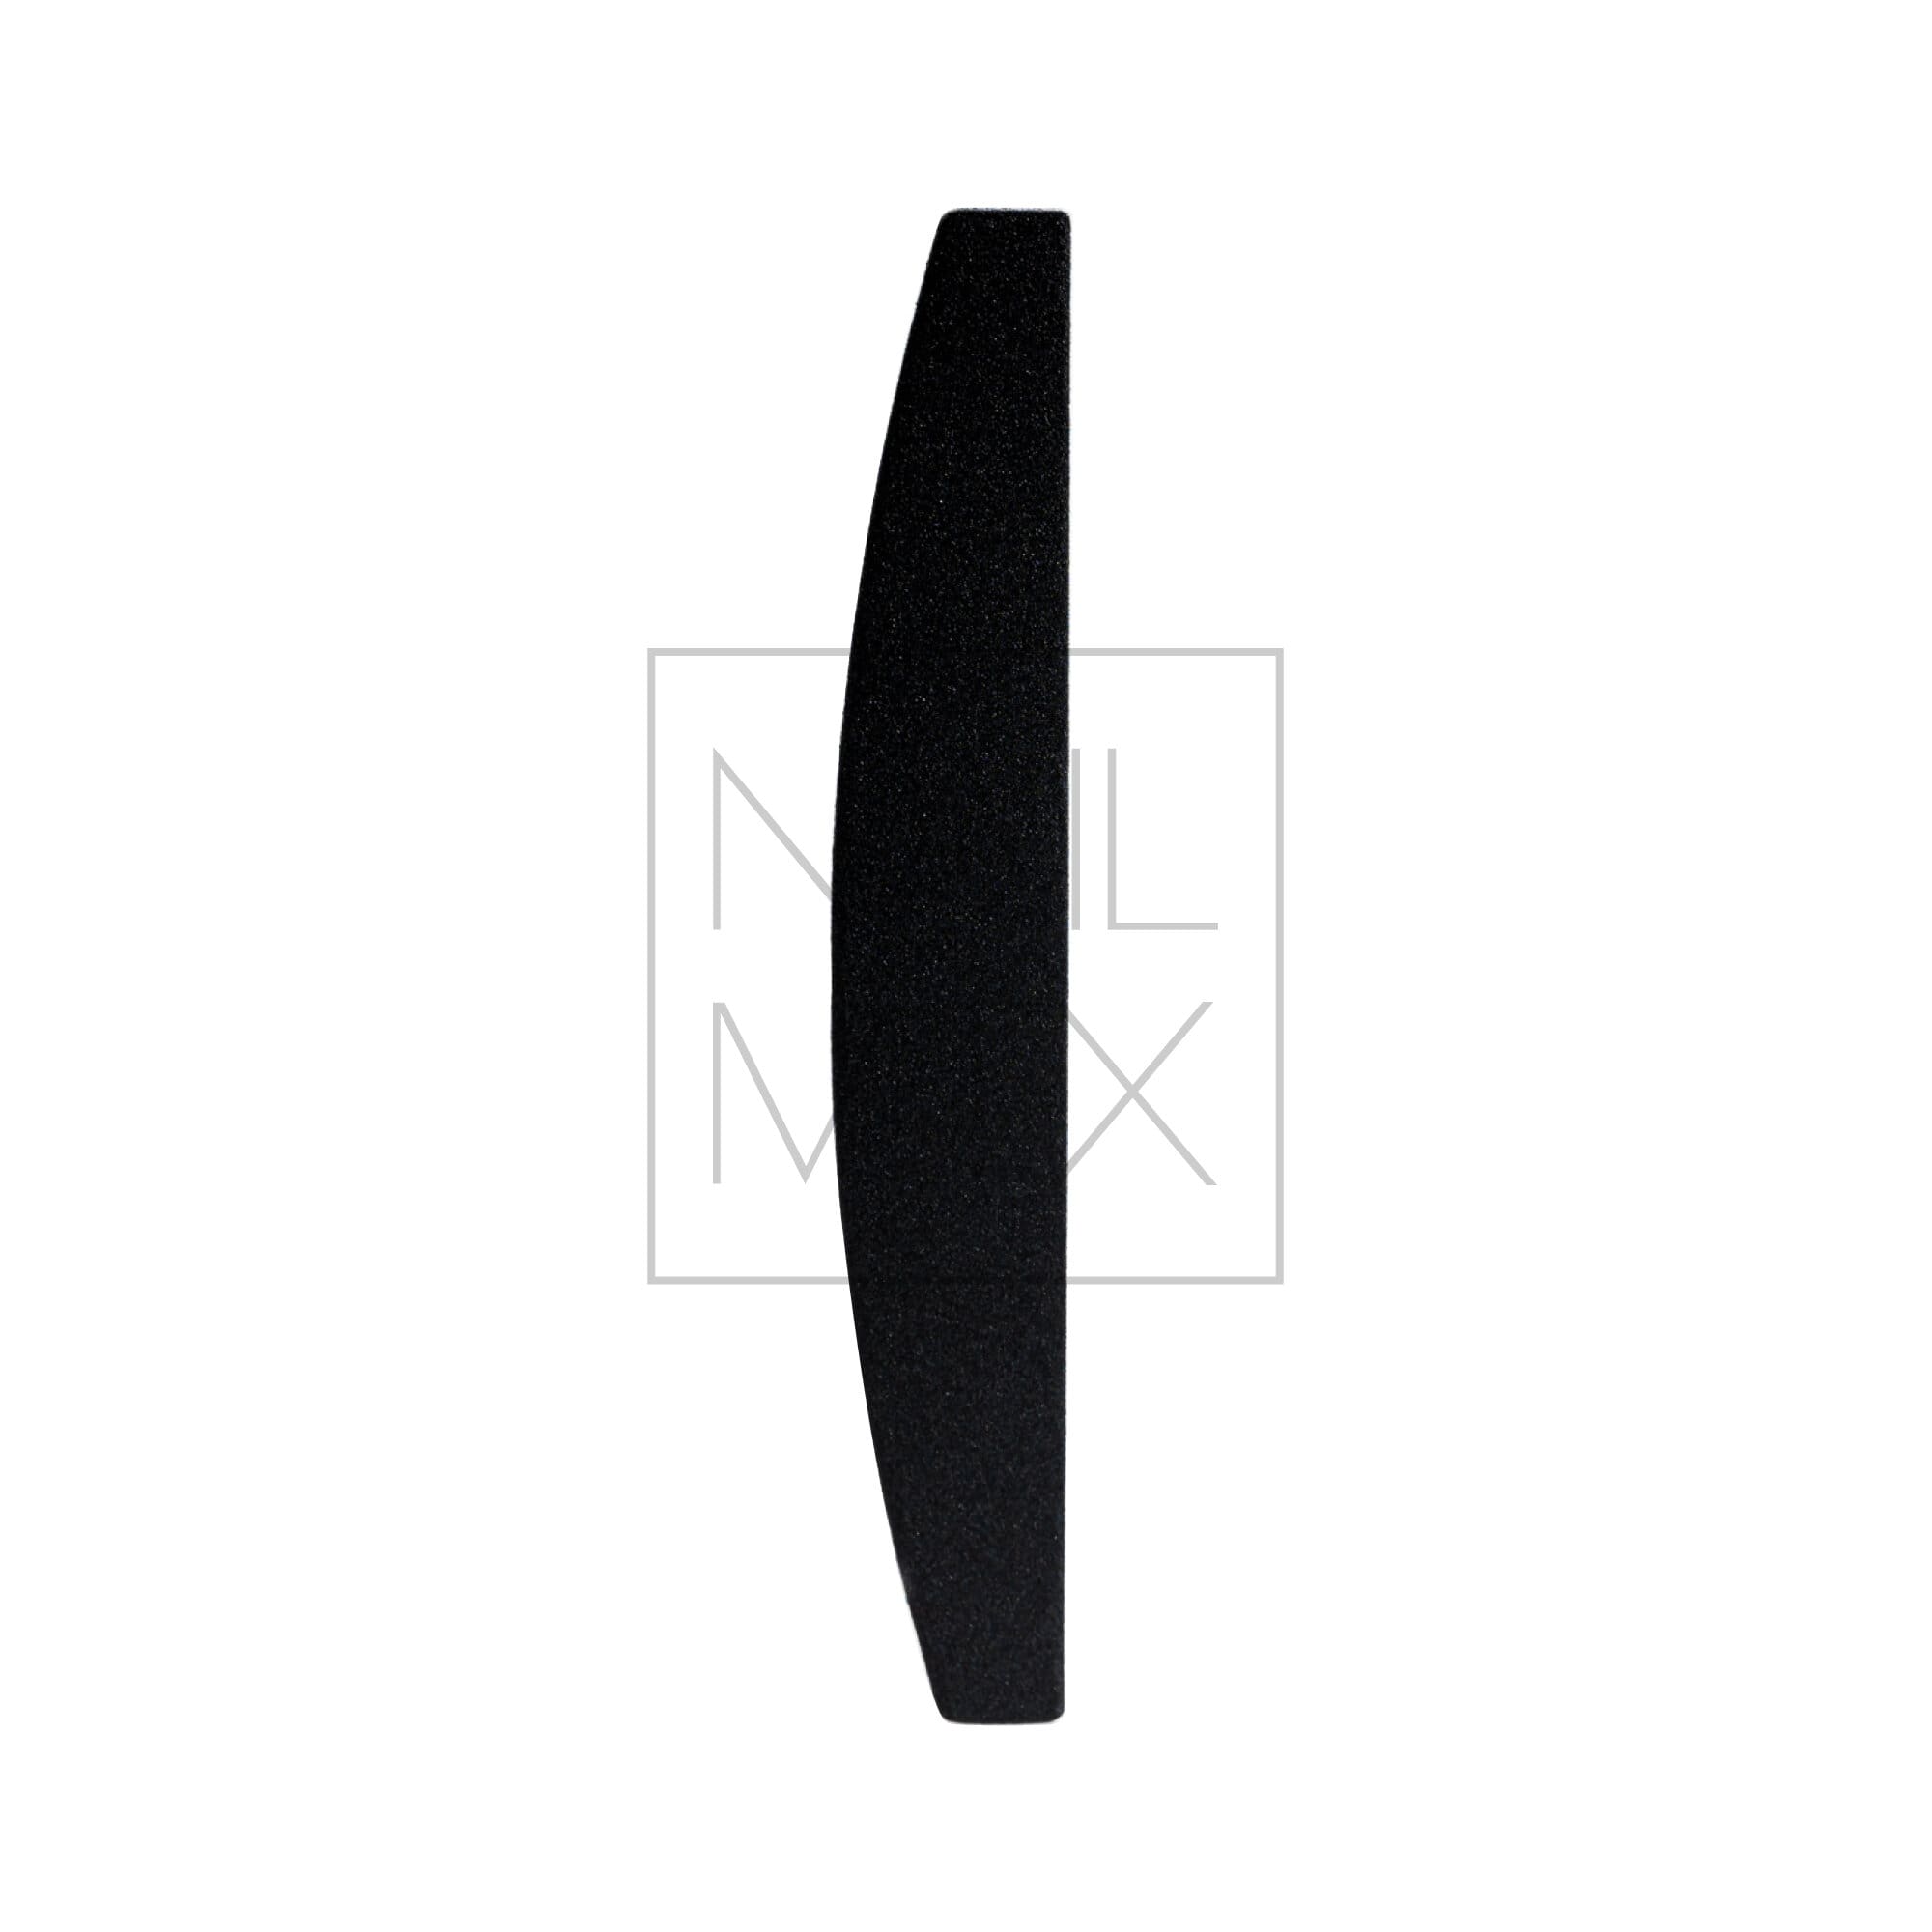 Kerman Náhradní brusný papír – půlměsíc Mini – černý (24x161mm), 50 kusů